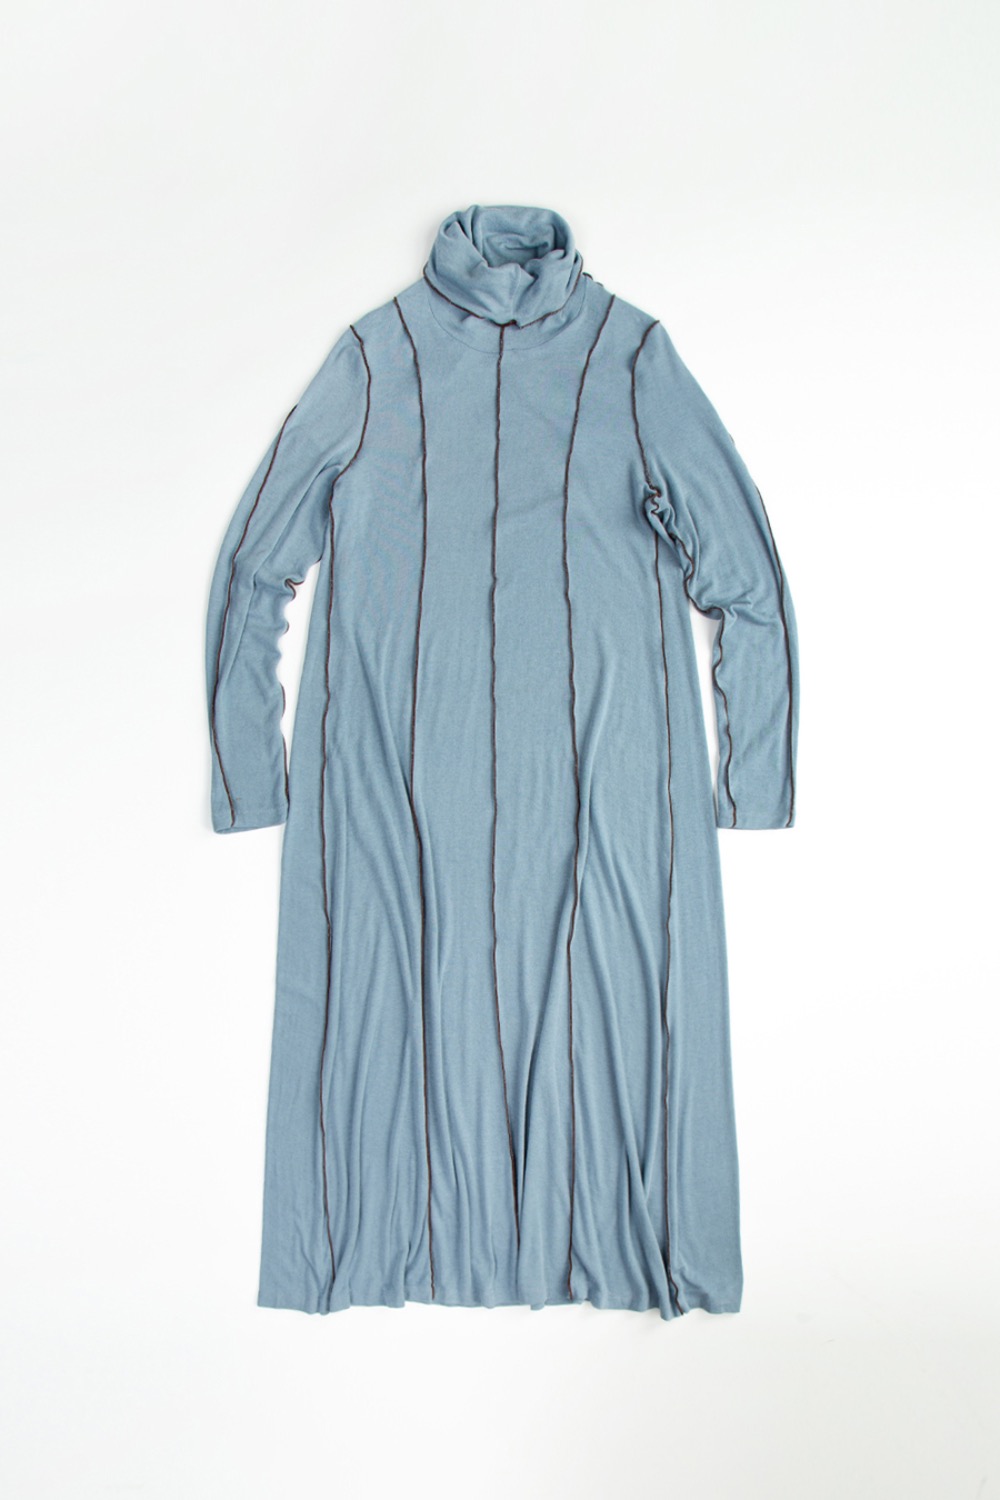 PAIX JERSEY LONG DRESS - BLUE